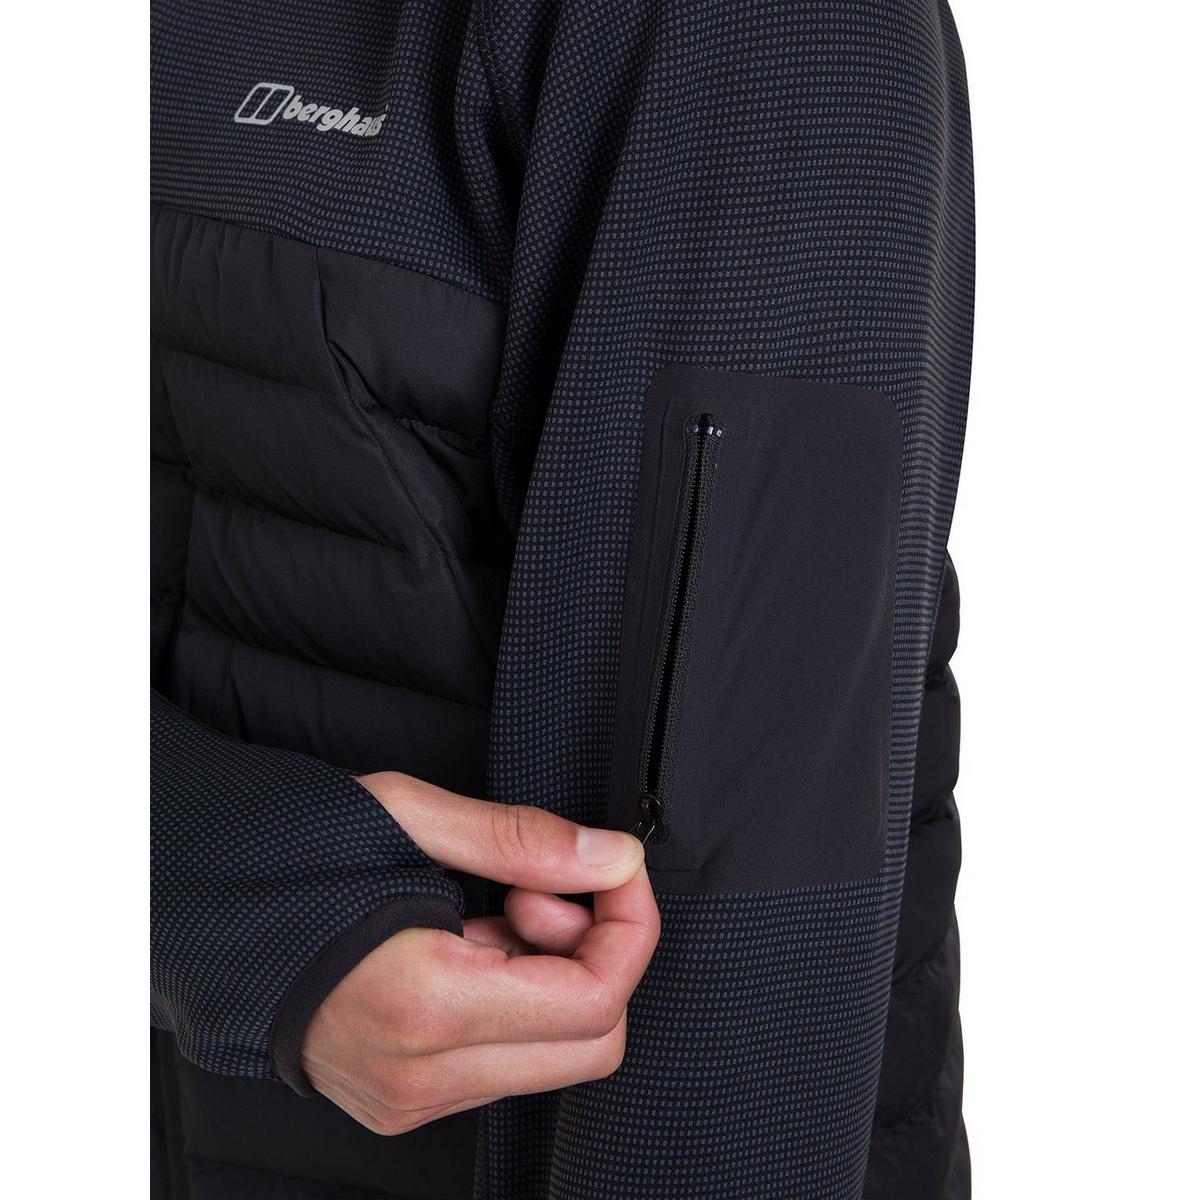 Berghaus Pravitale Hybrid Mens Outdoor Insulated Waterproof Jacket Black 